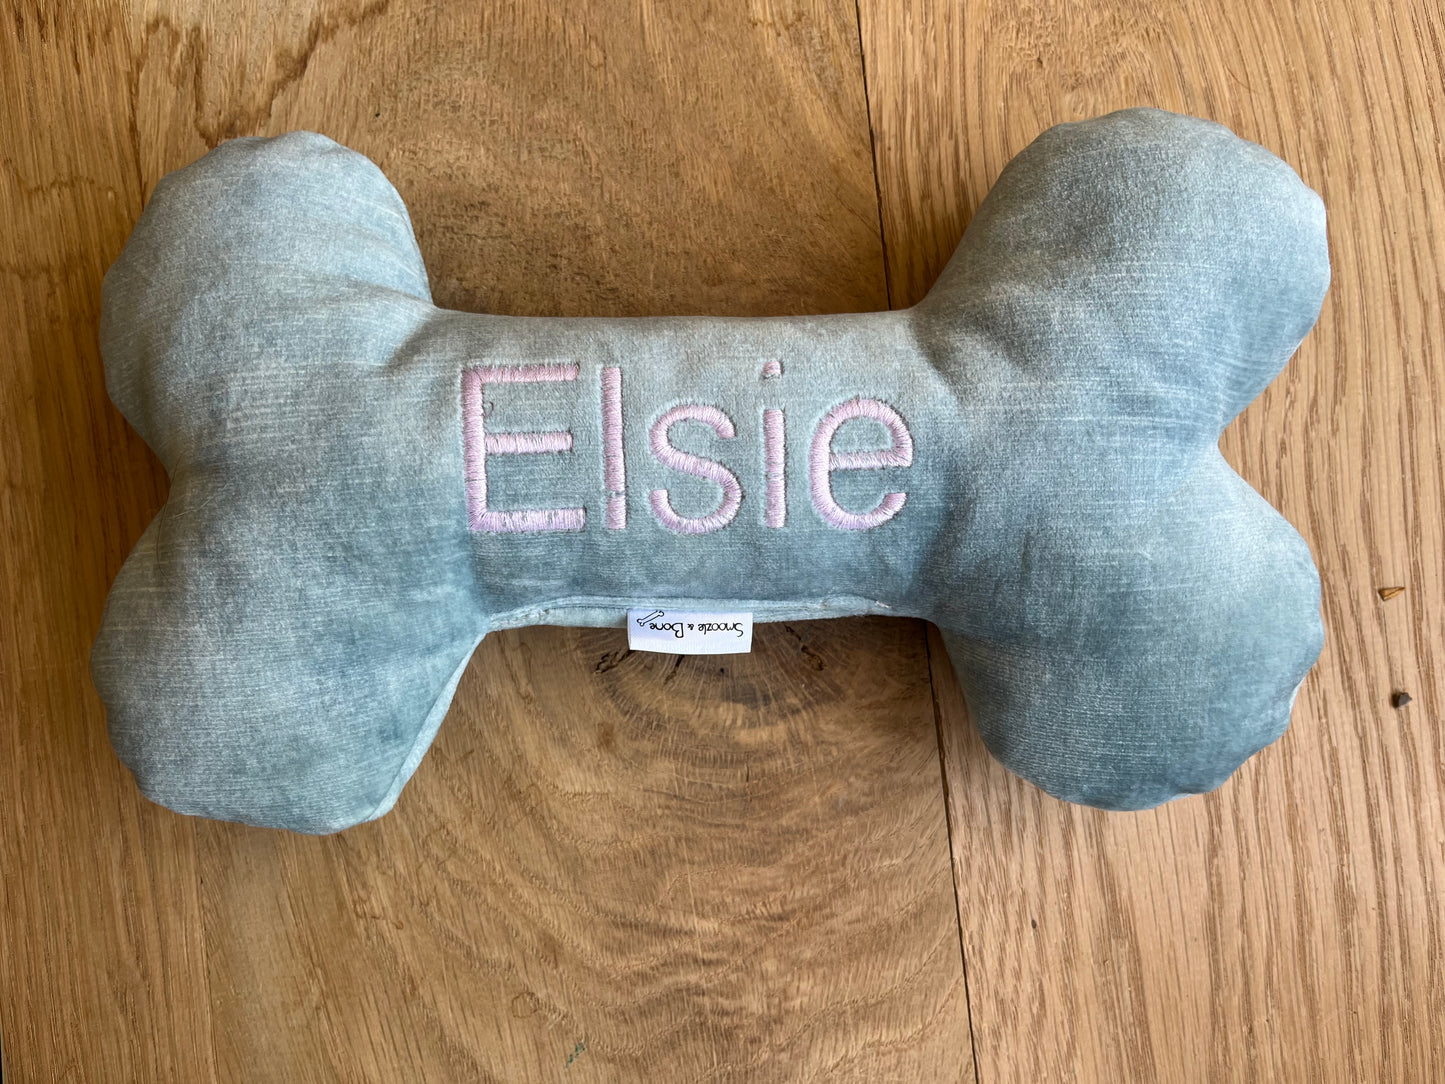 Elsie bone